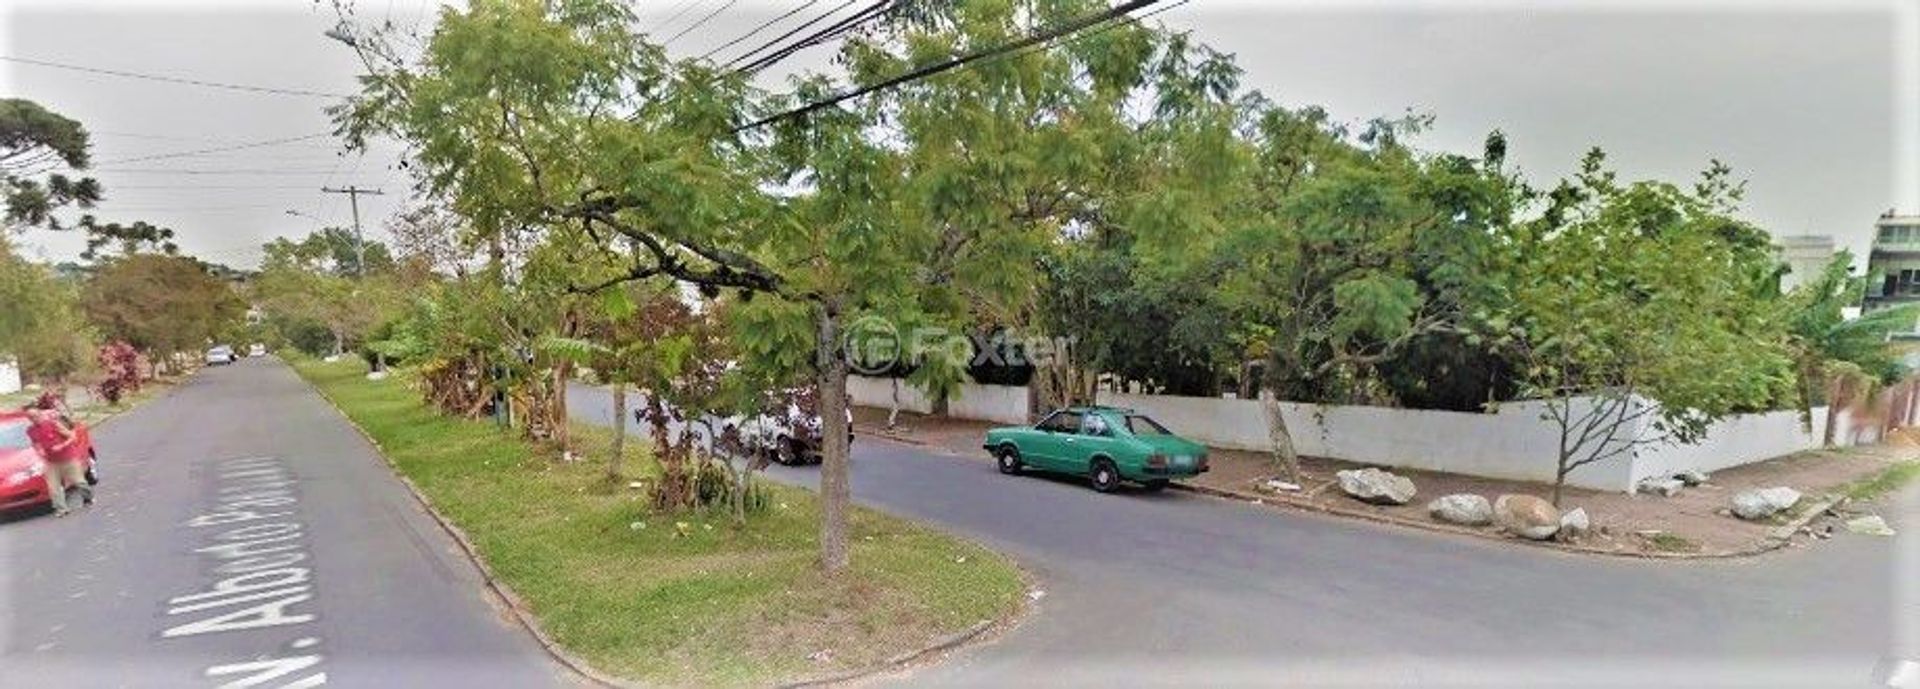 Terreno à venda Avenida Alberto Pasqualini, Jardim Sabará - Porto Alegre